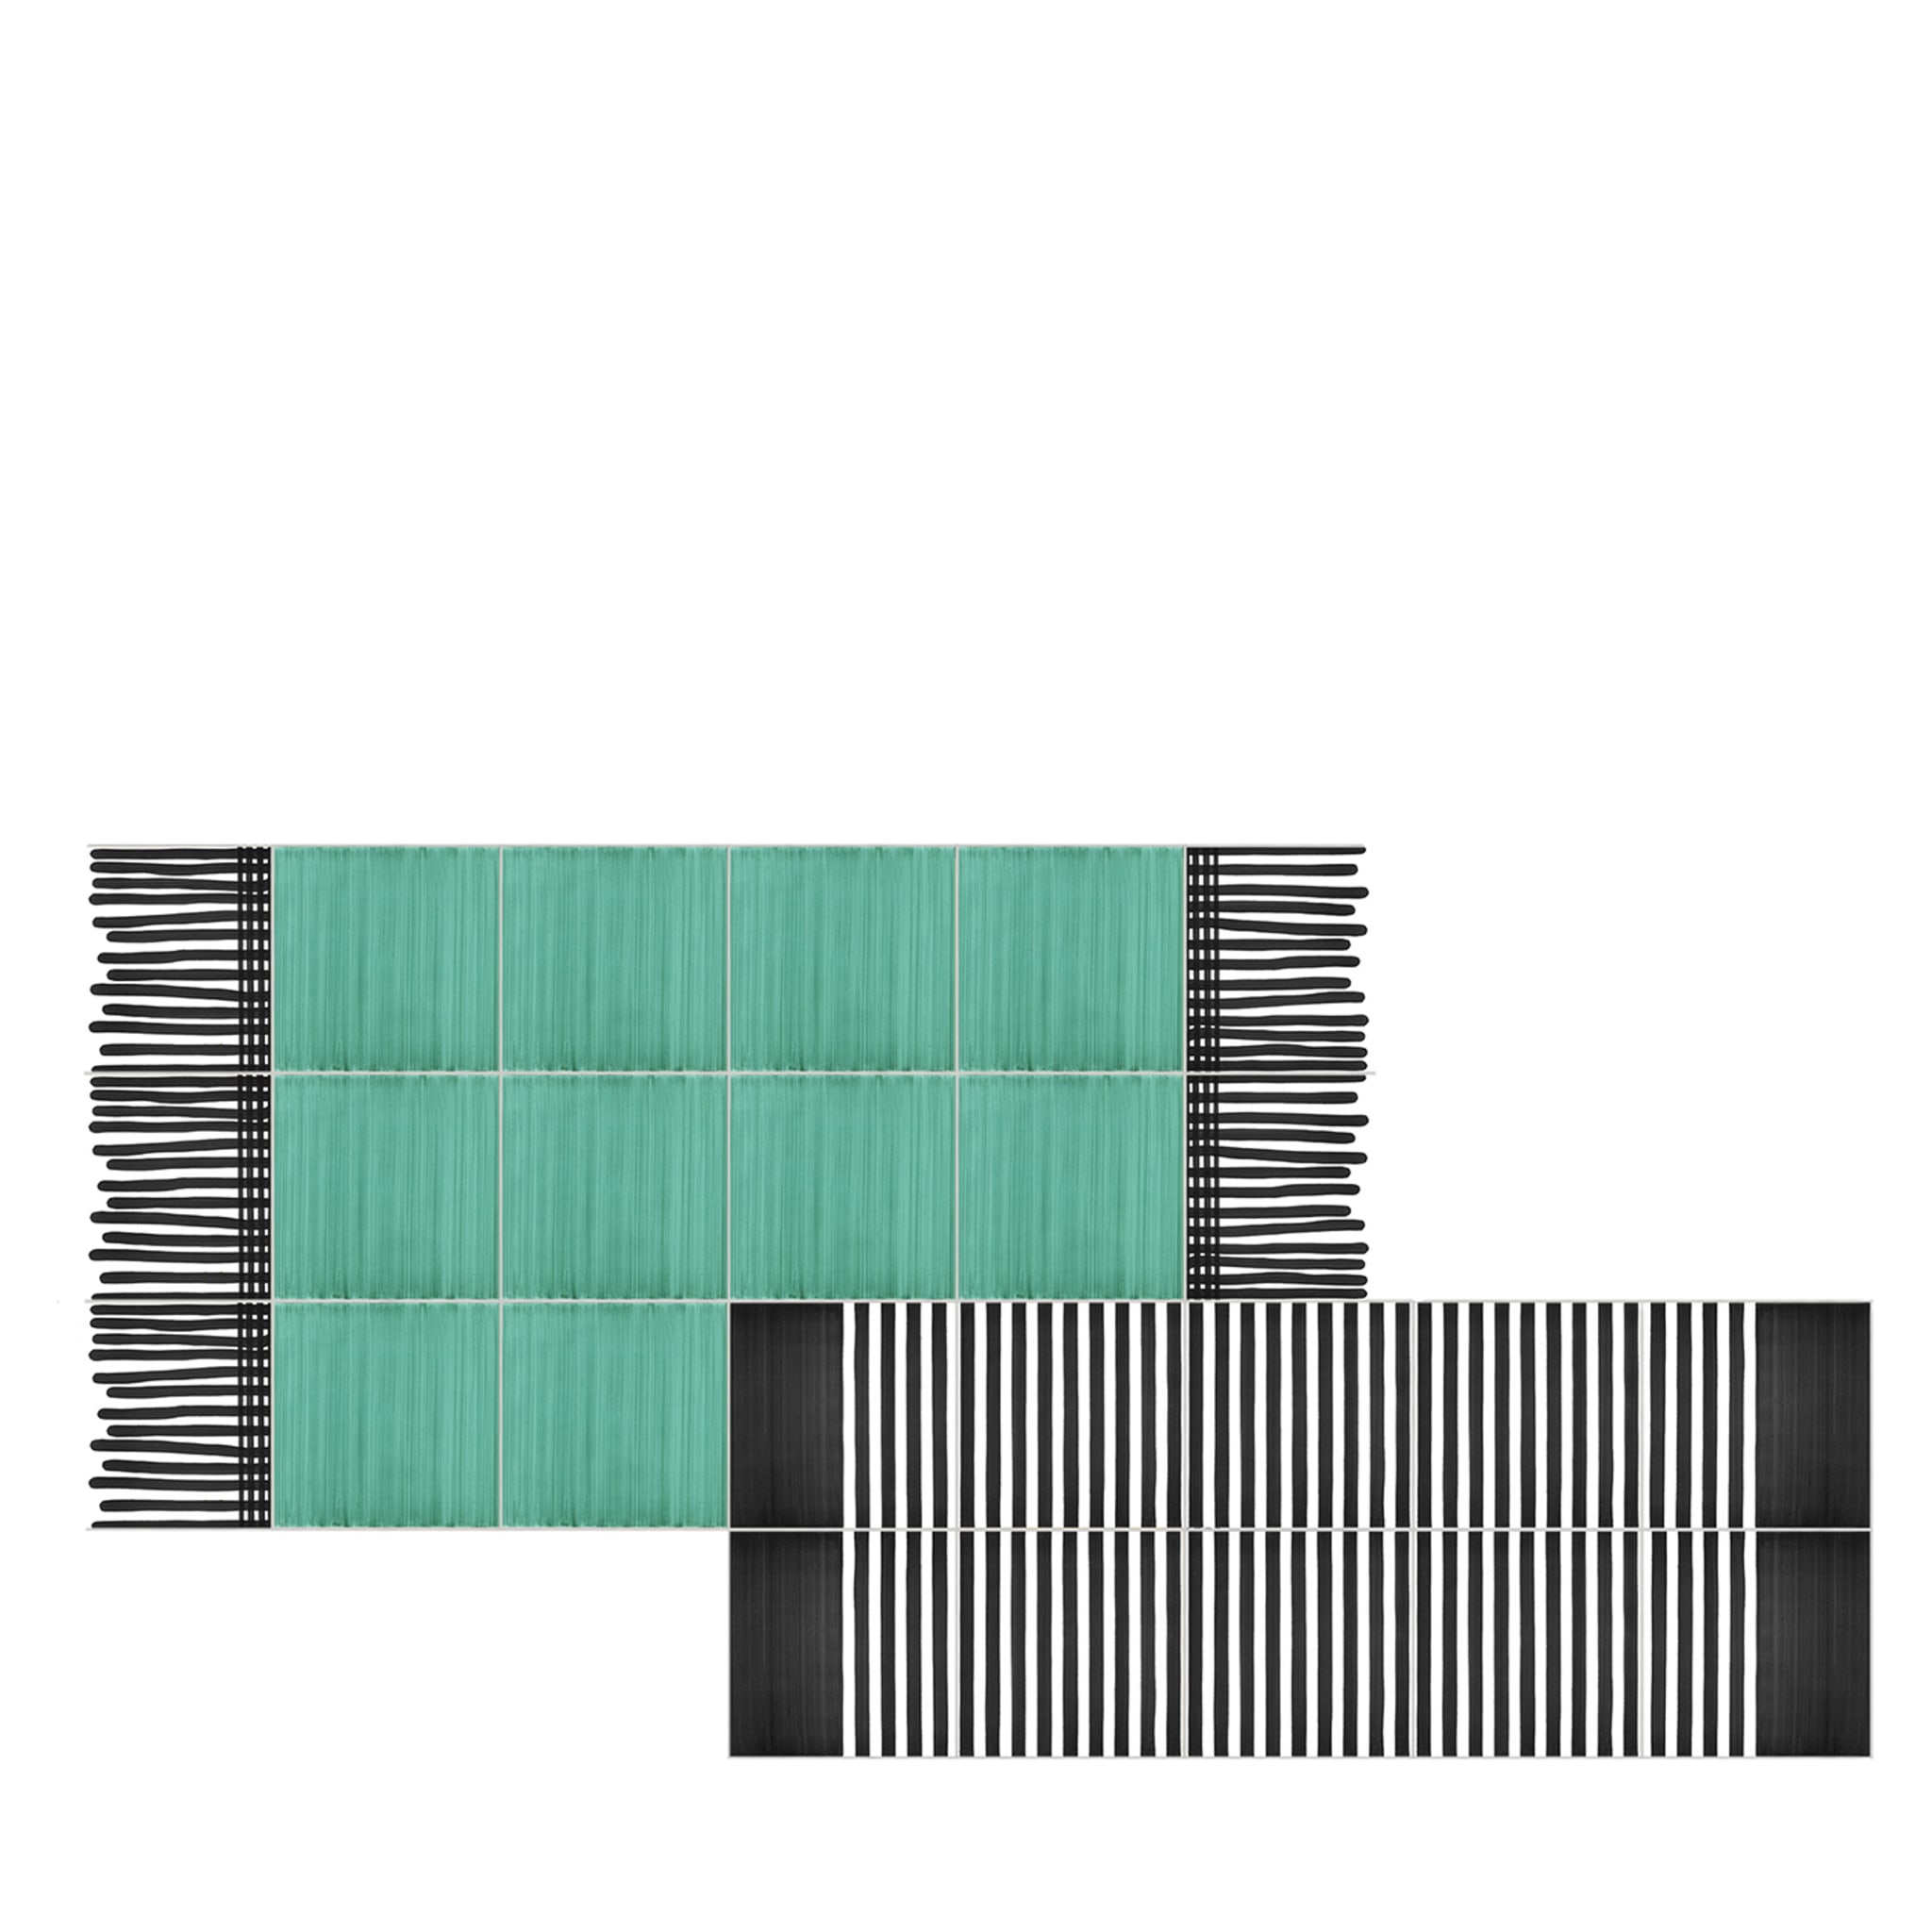 Tapis Composition en céramique vert et noir et blanc de Giuliano Andrea dell'Uva 160 x 80 - Vue principale